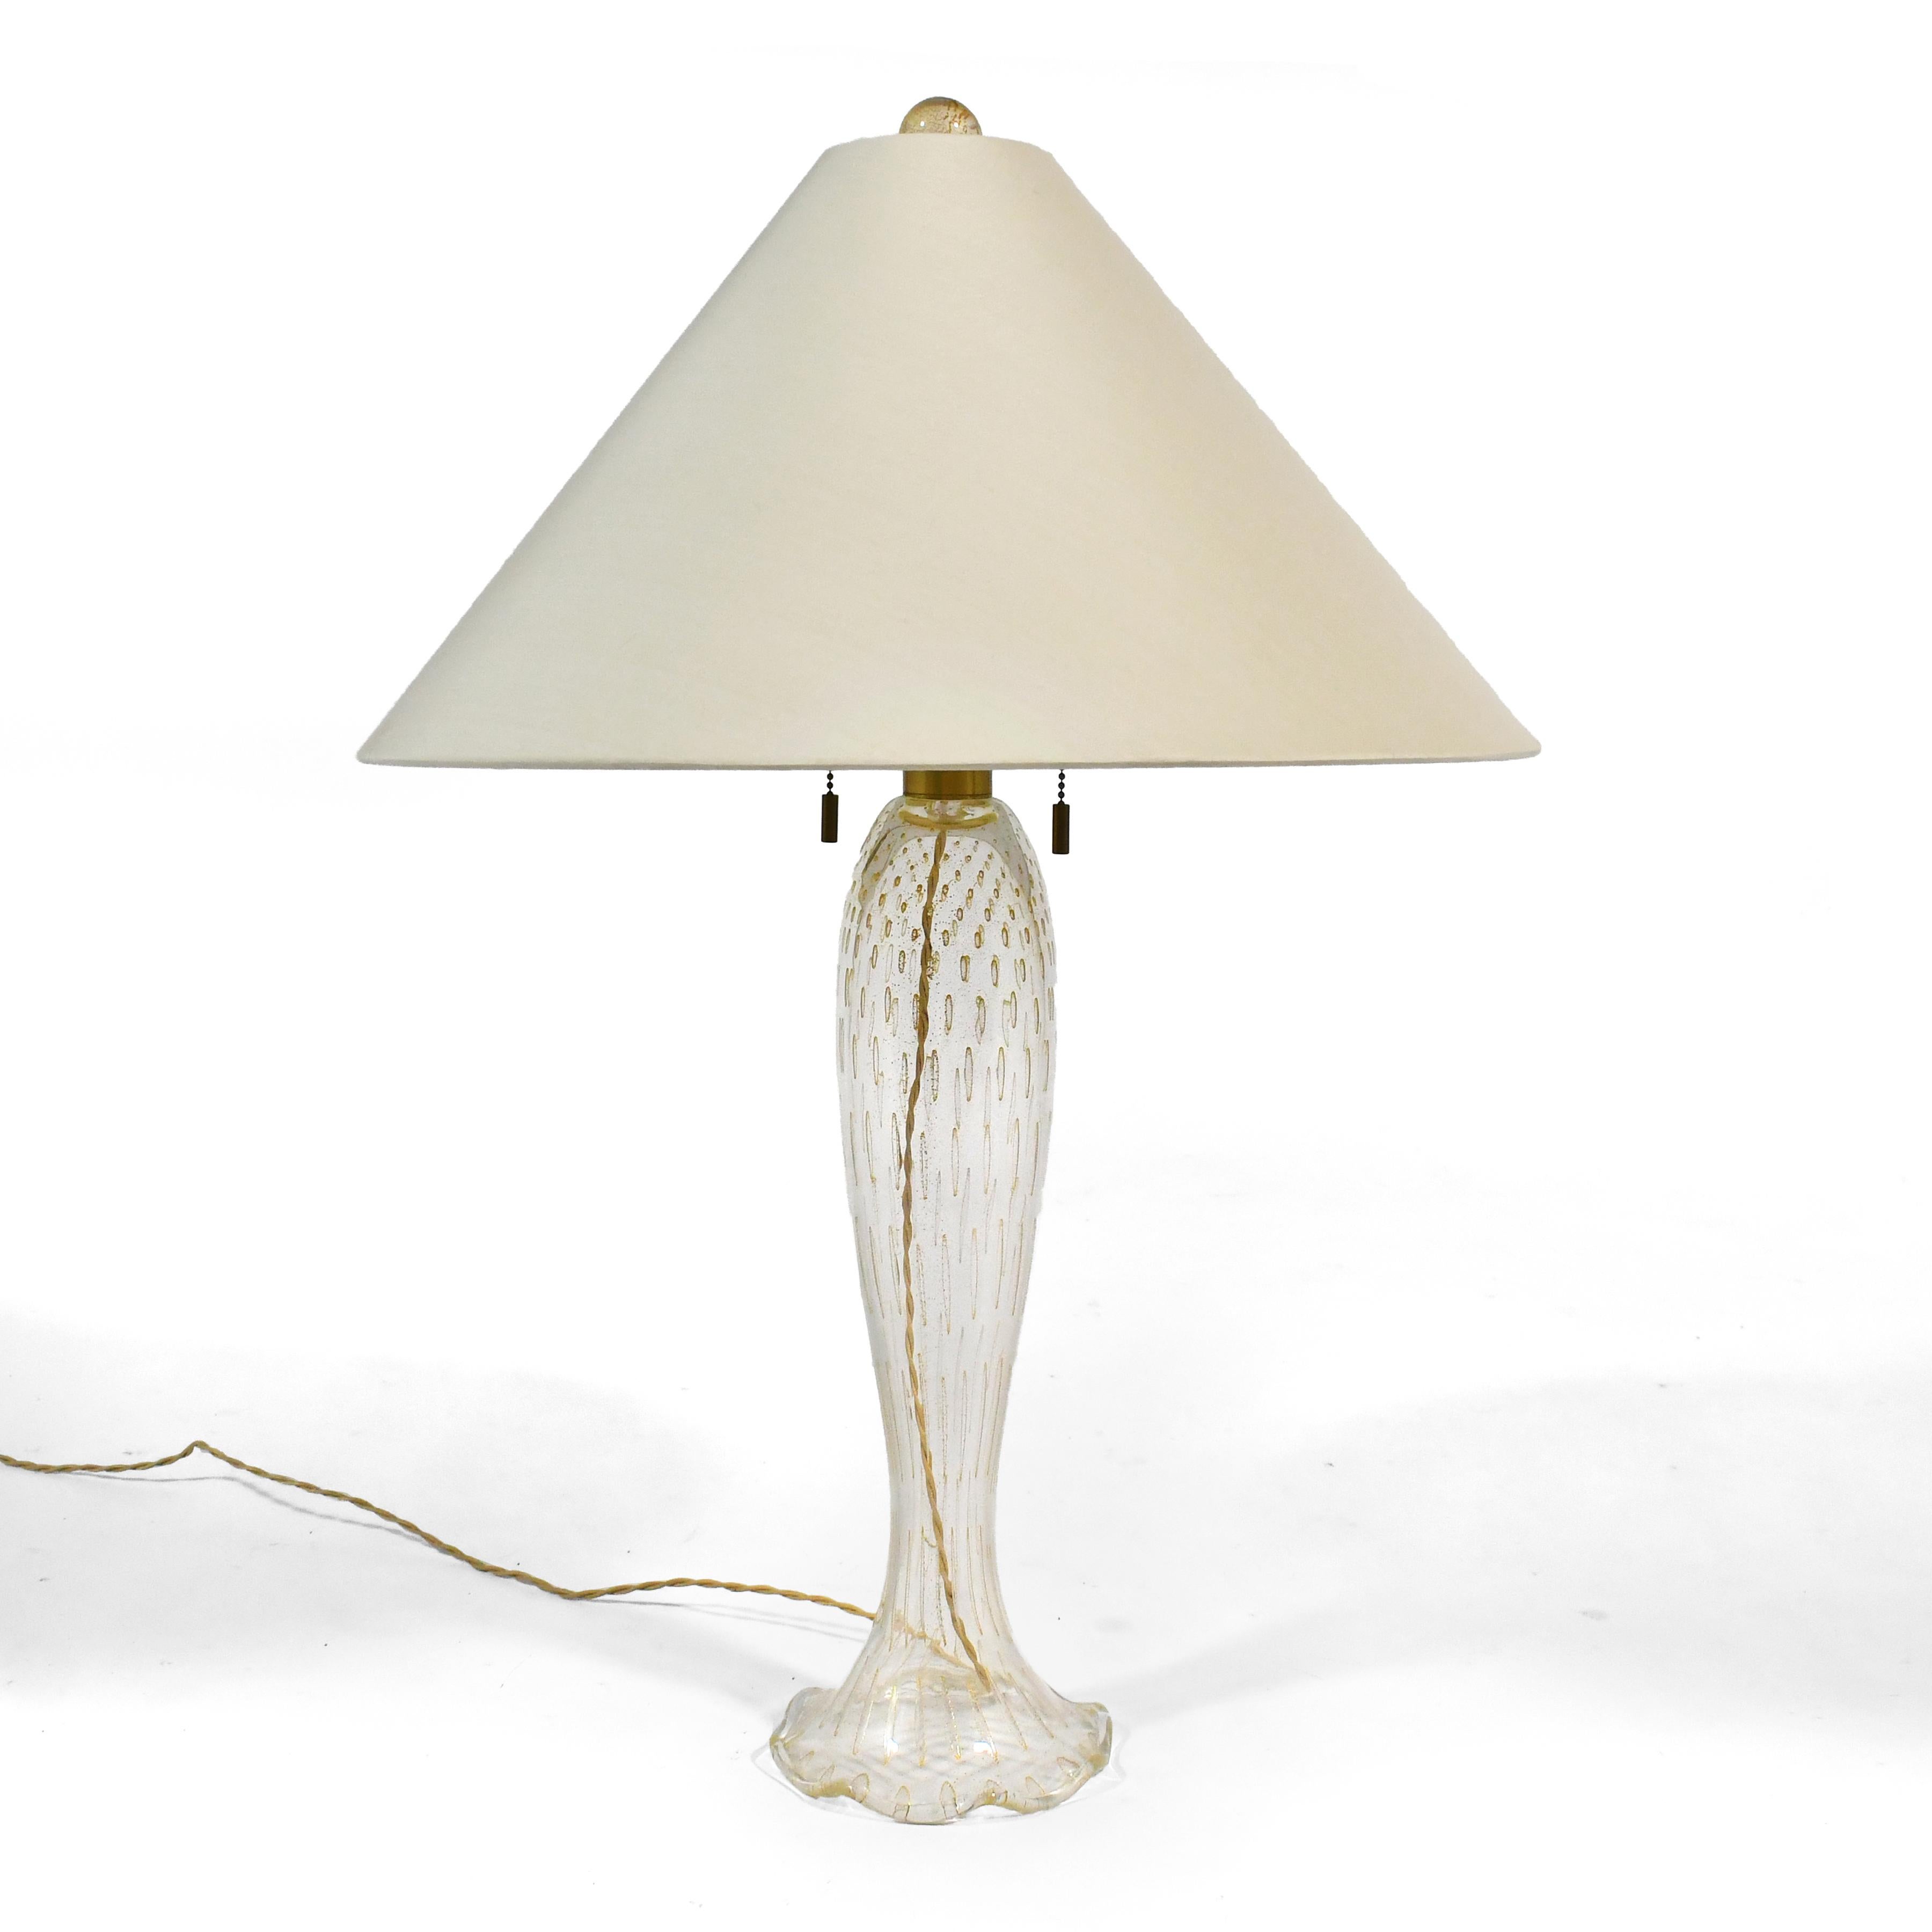 Cette lampe rare et remarquable, conçue par John Hutton pour Dongia, a été fabriquée en verre de Murano Seguso selon la technique du Cordonato D'Oro. Le verre transparent est décoré de bulles capturées, de poussière d'or et d'aventurine d'or. Elle